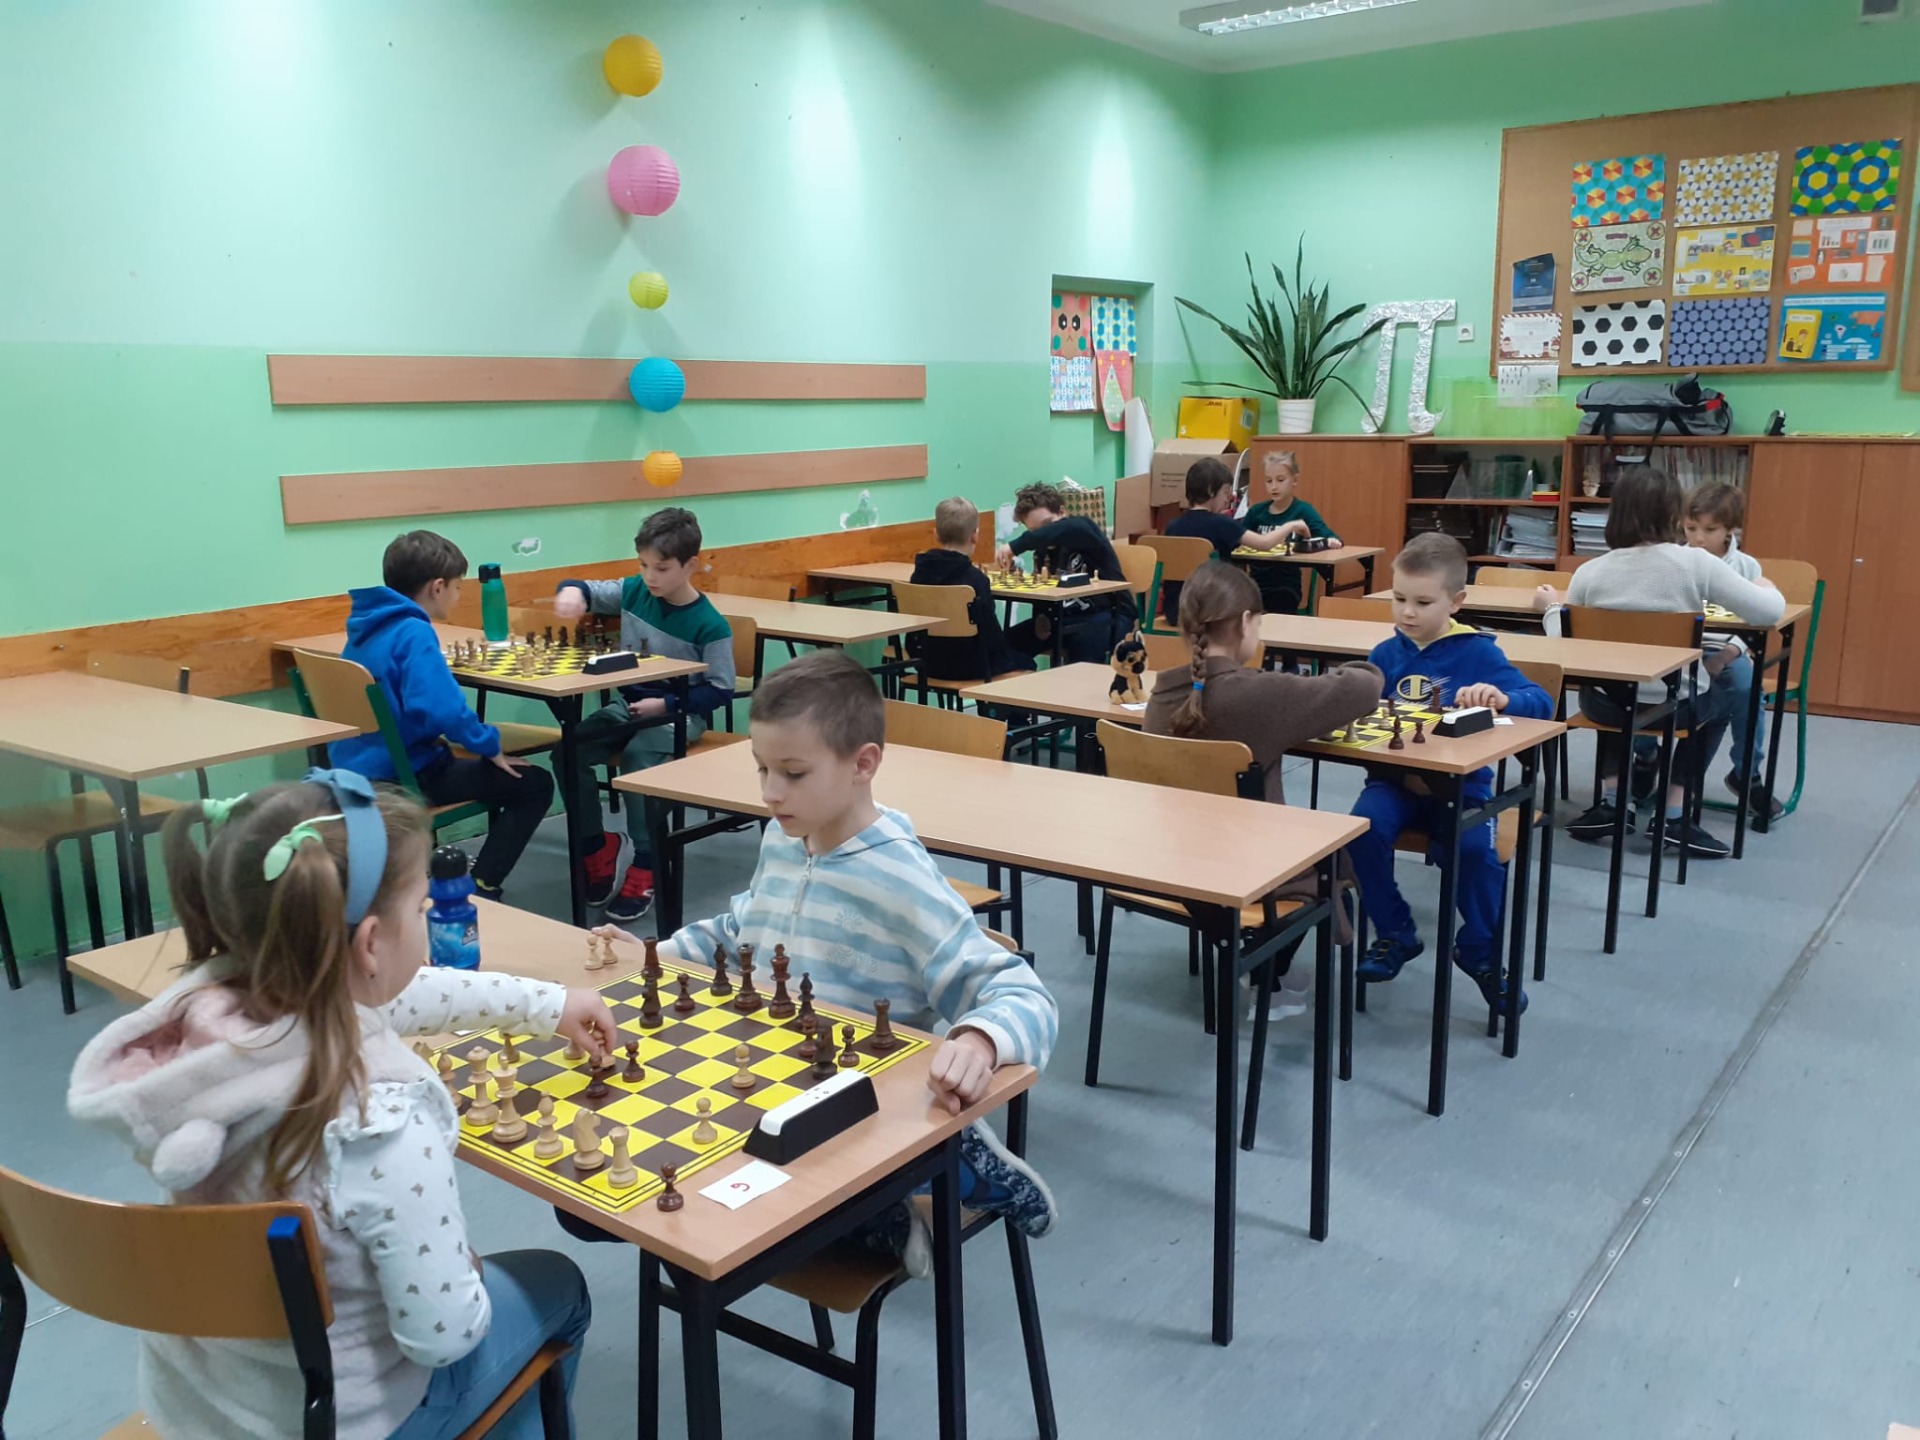 Uczniowie grają w szachy w sali szkolnej. 